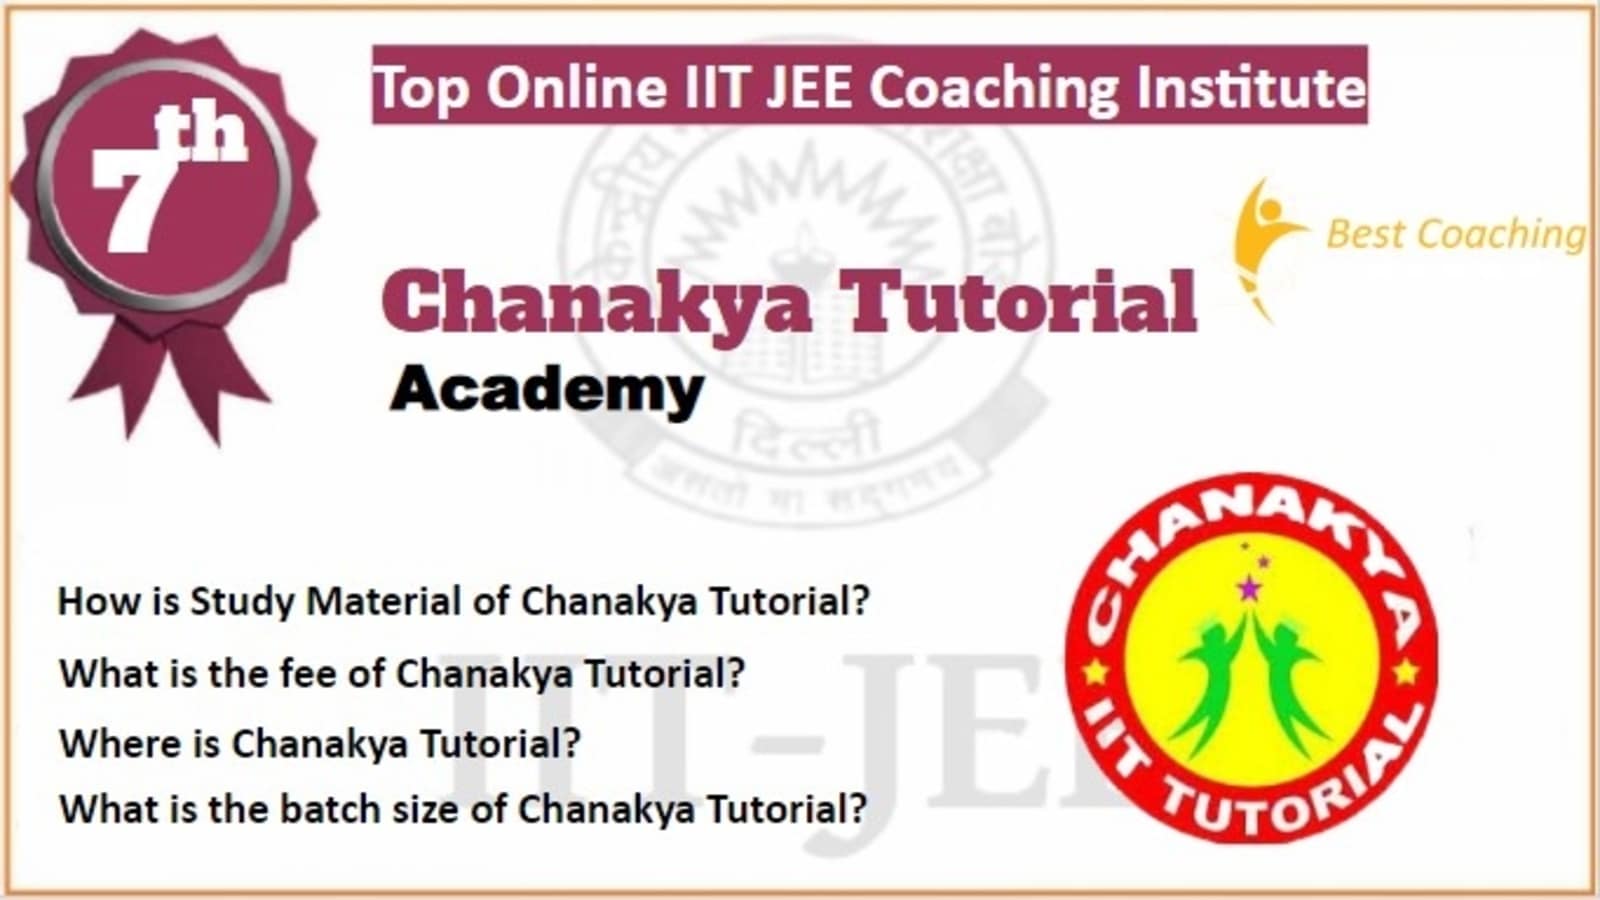 Rank 7 Best Online IIT JEE Coaching